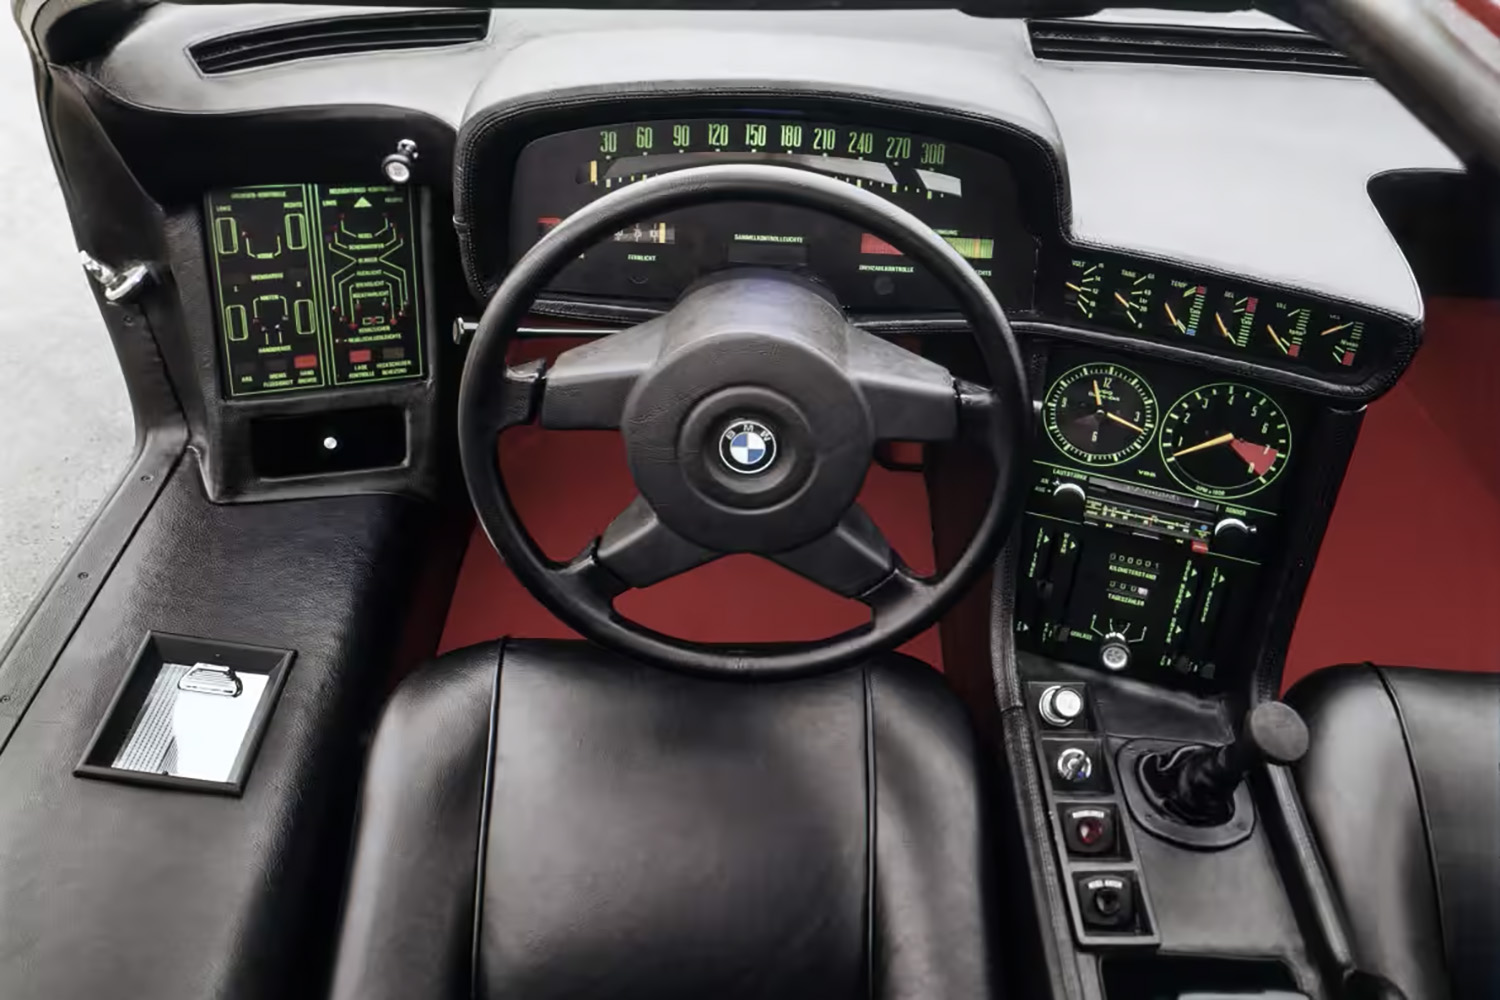 BMWの歴史的モデルはコンセプトカーの「BMWターボ」から始まった